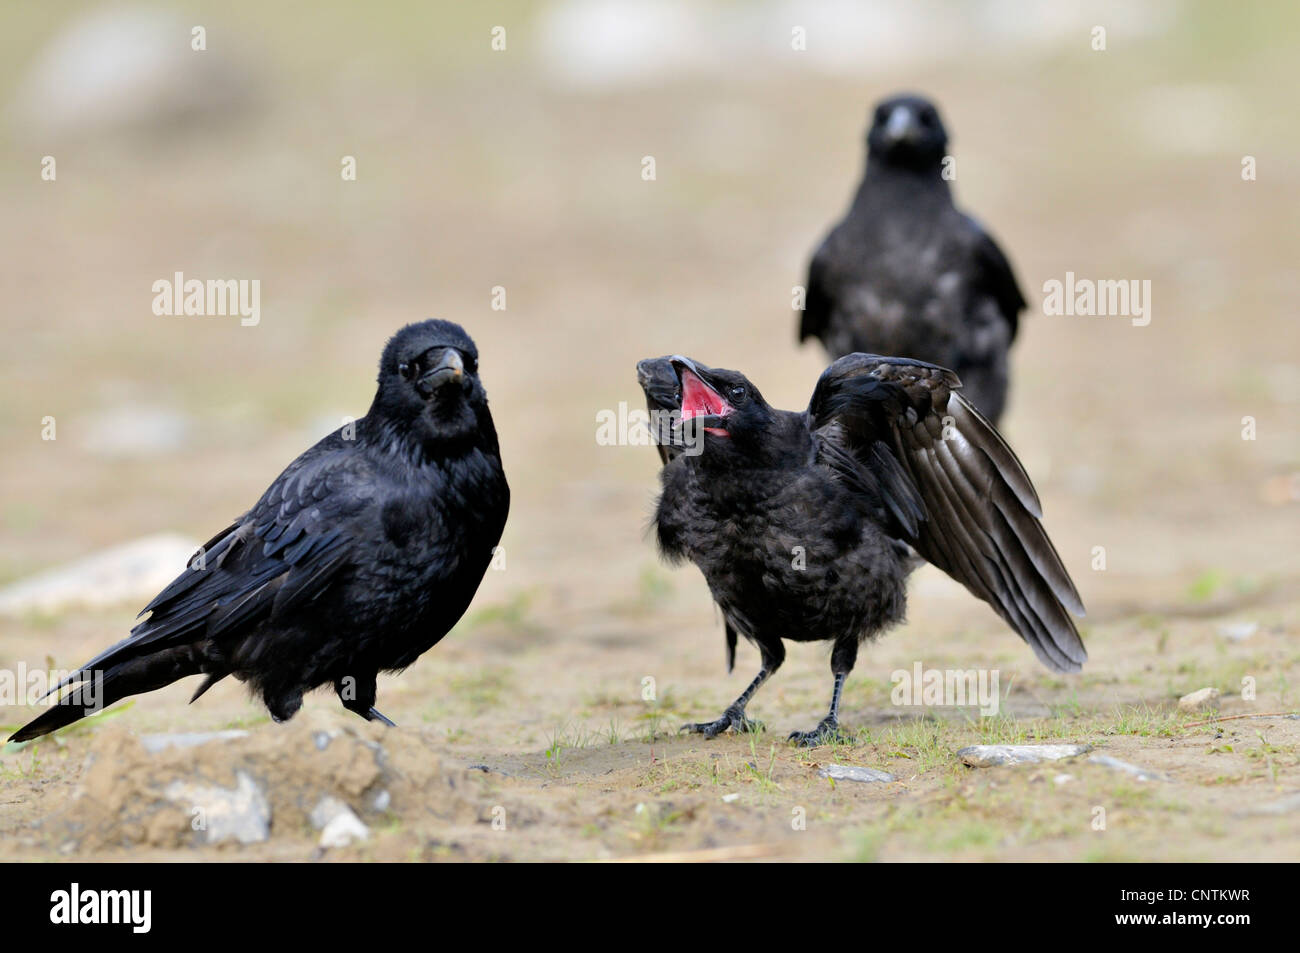 Carrion crow (Corvus corone), tres aves sobre un suelo de tierra, de menores pidiendo comida, Alemania Foto de stock